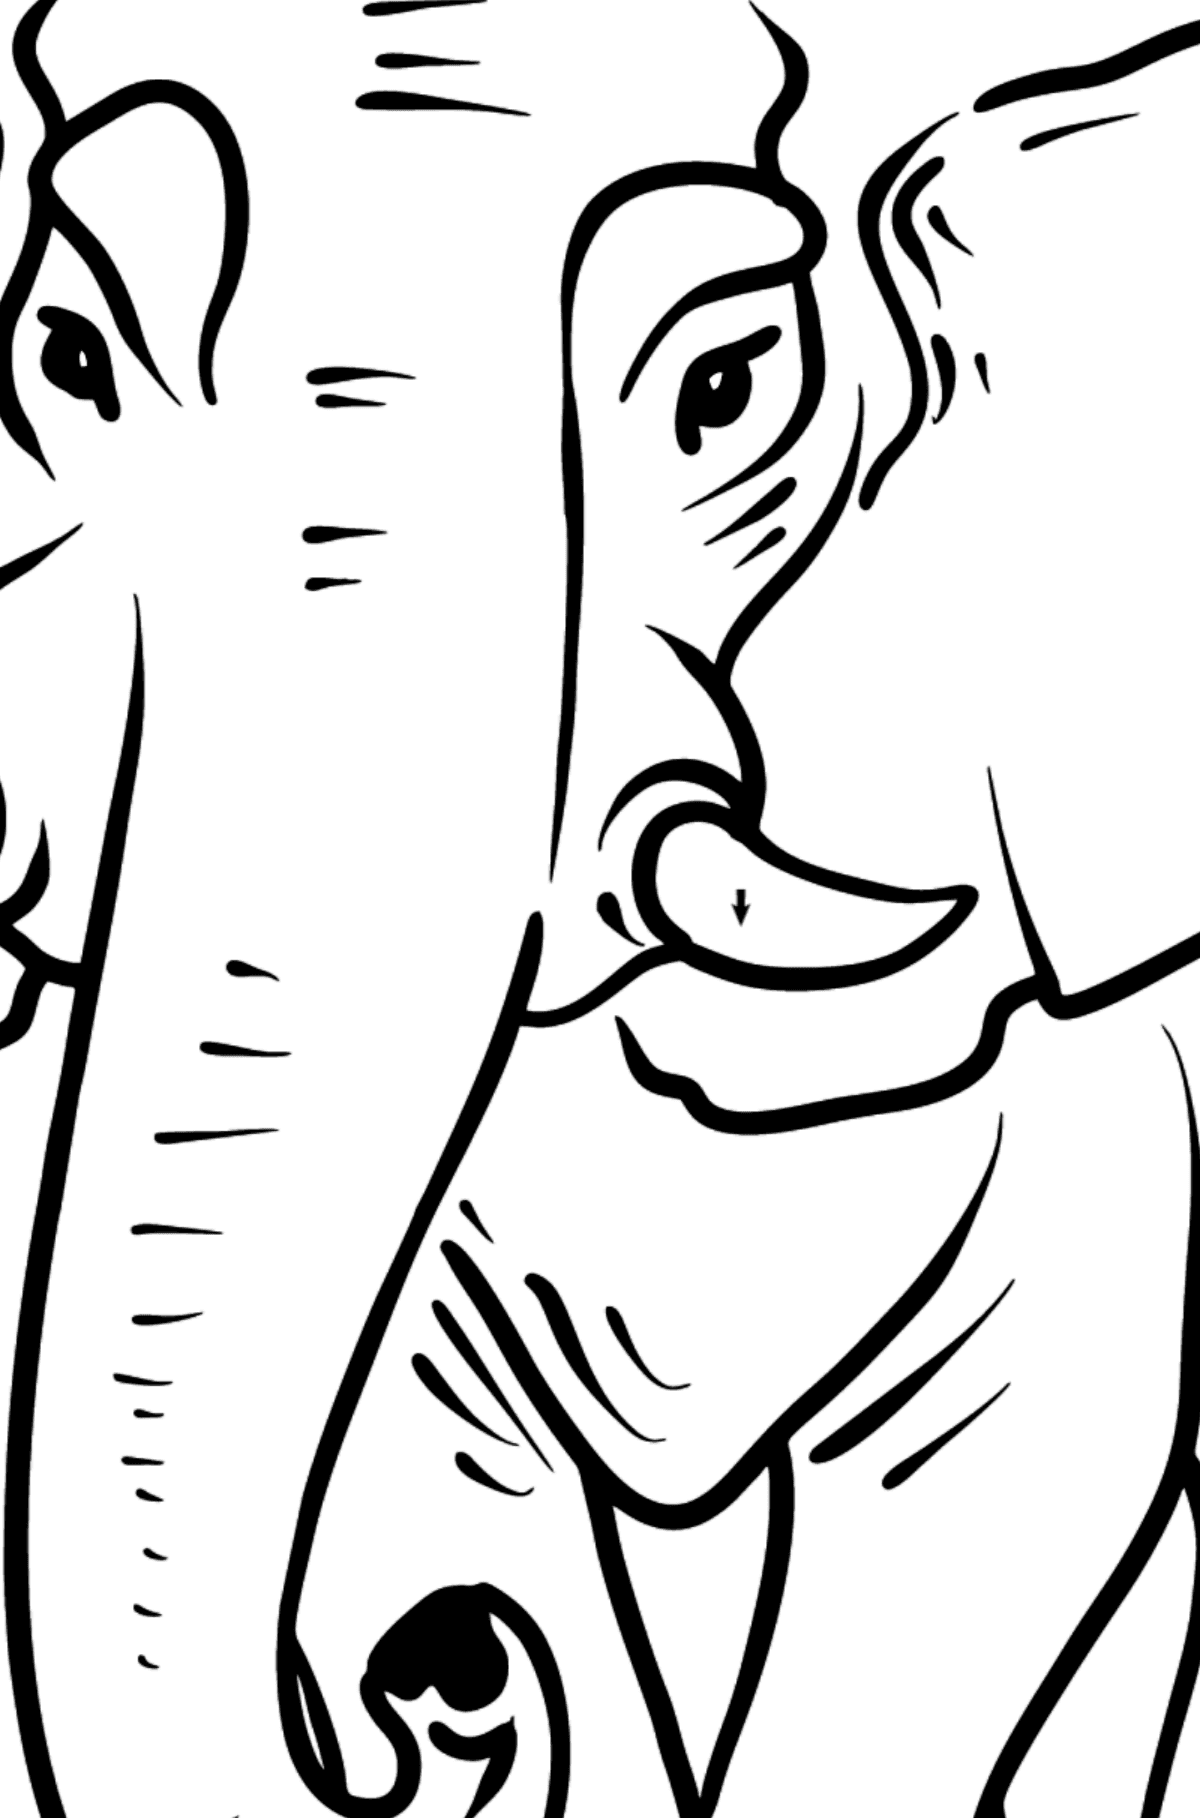 Boyama sayfası fil - Sembollerle Boyama çocuklar için